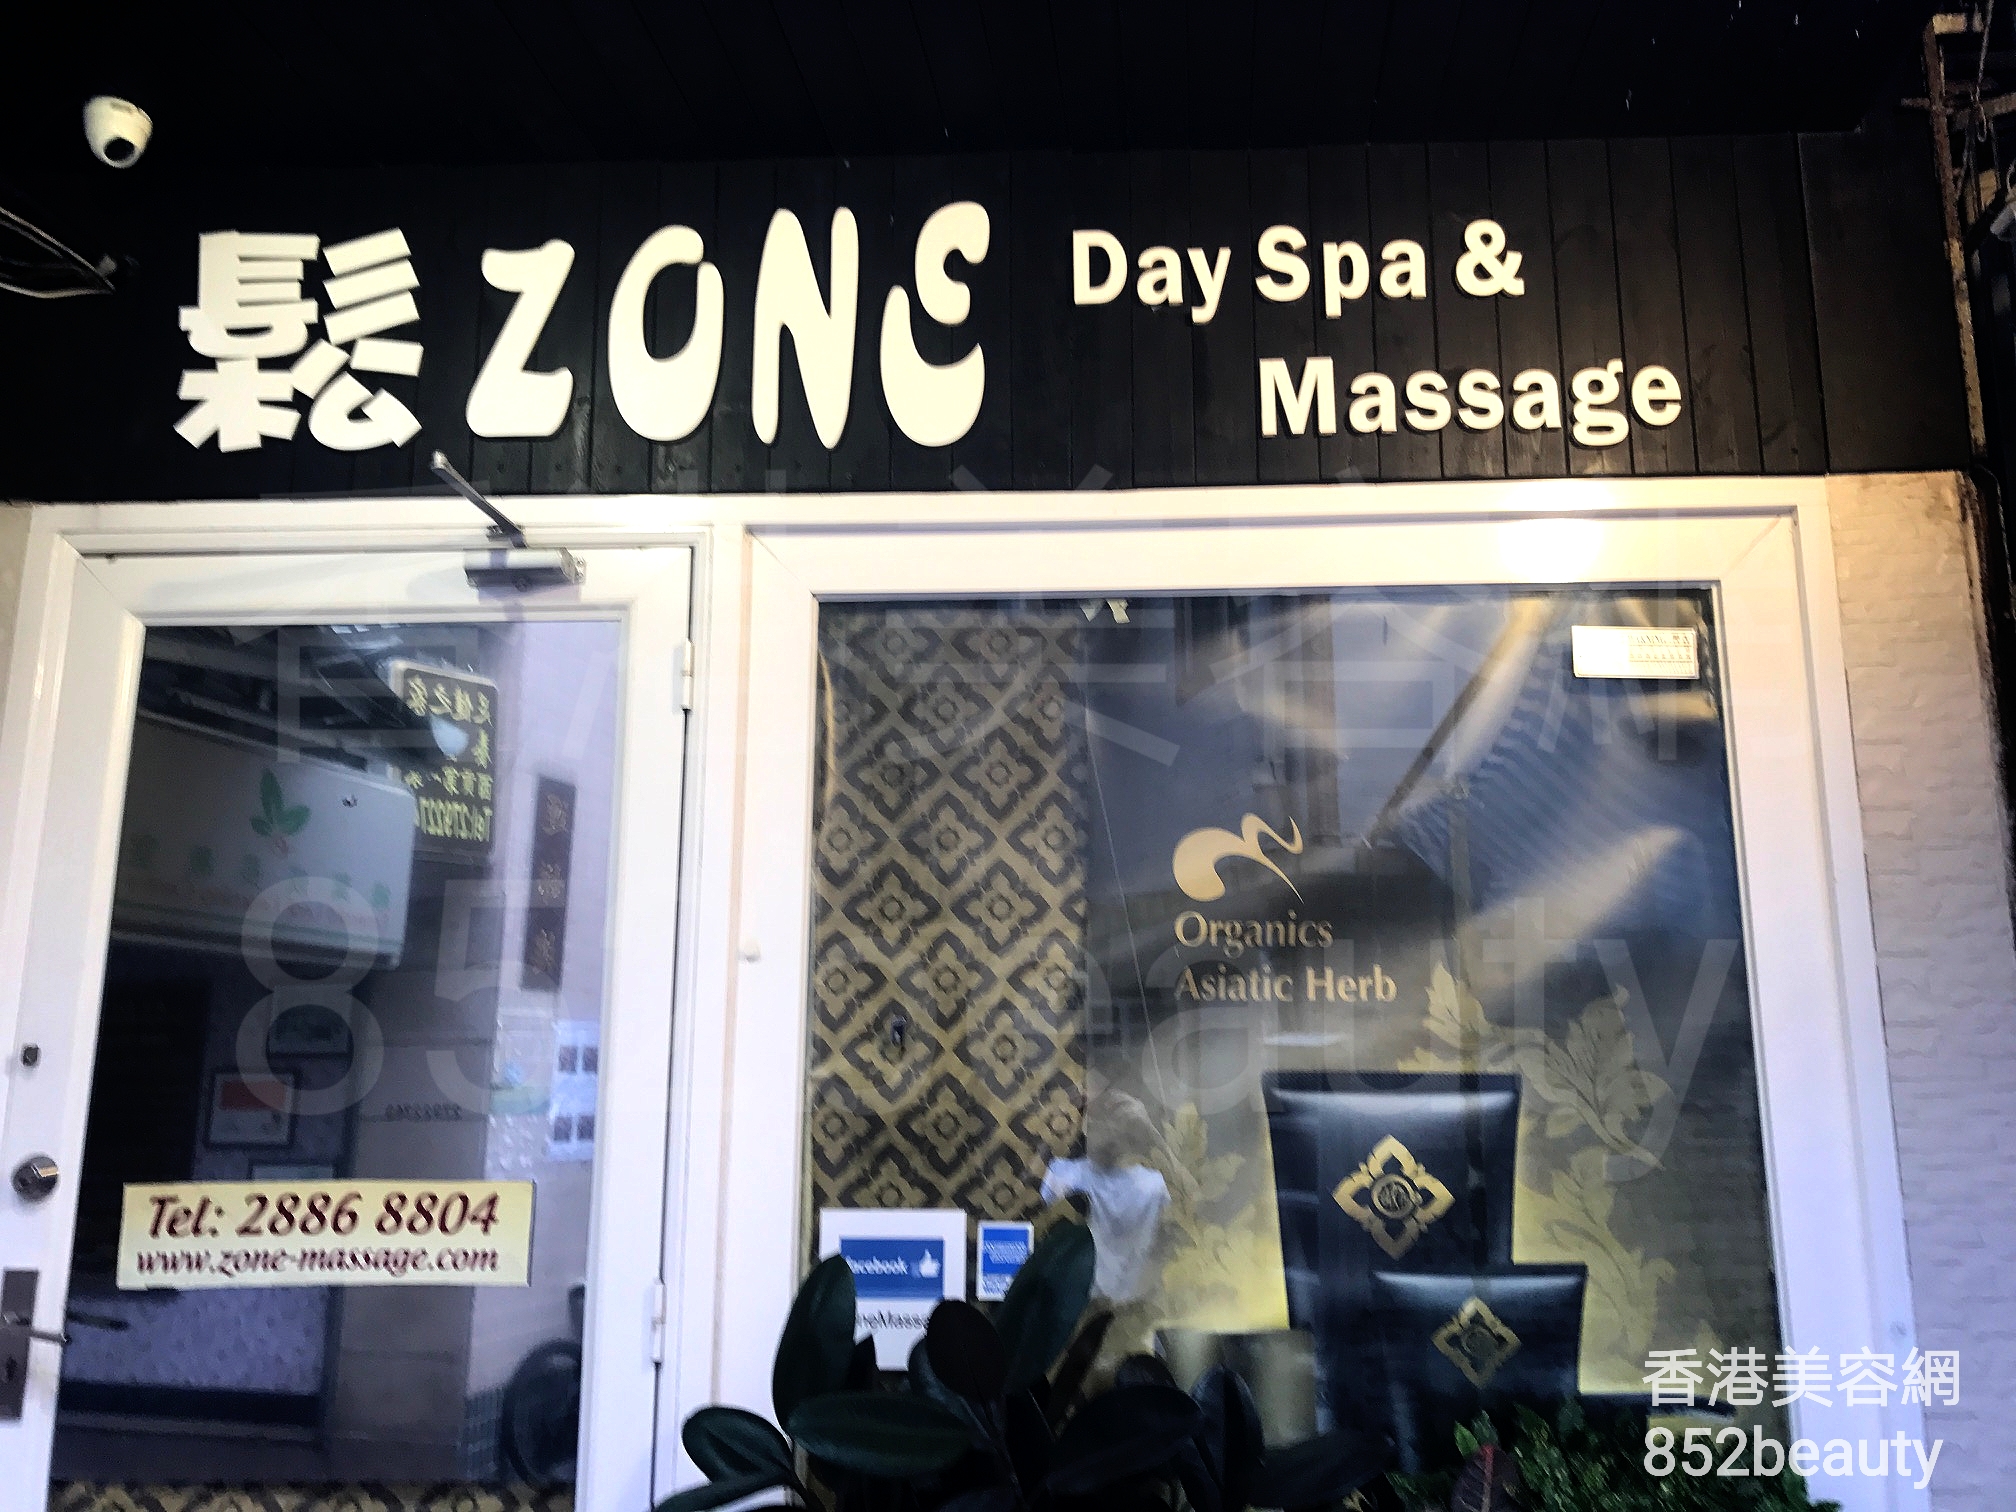 Massage/SPA: 鬆Zone Day Spa & Massage